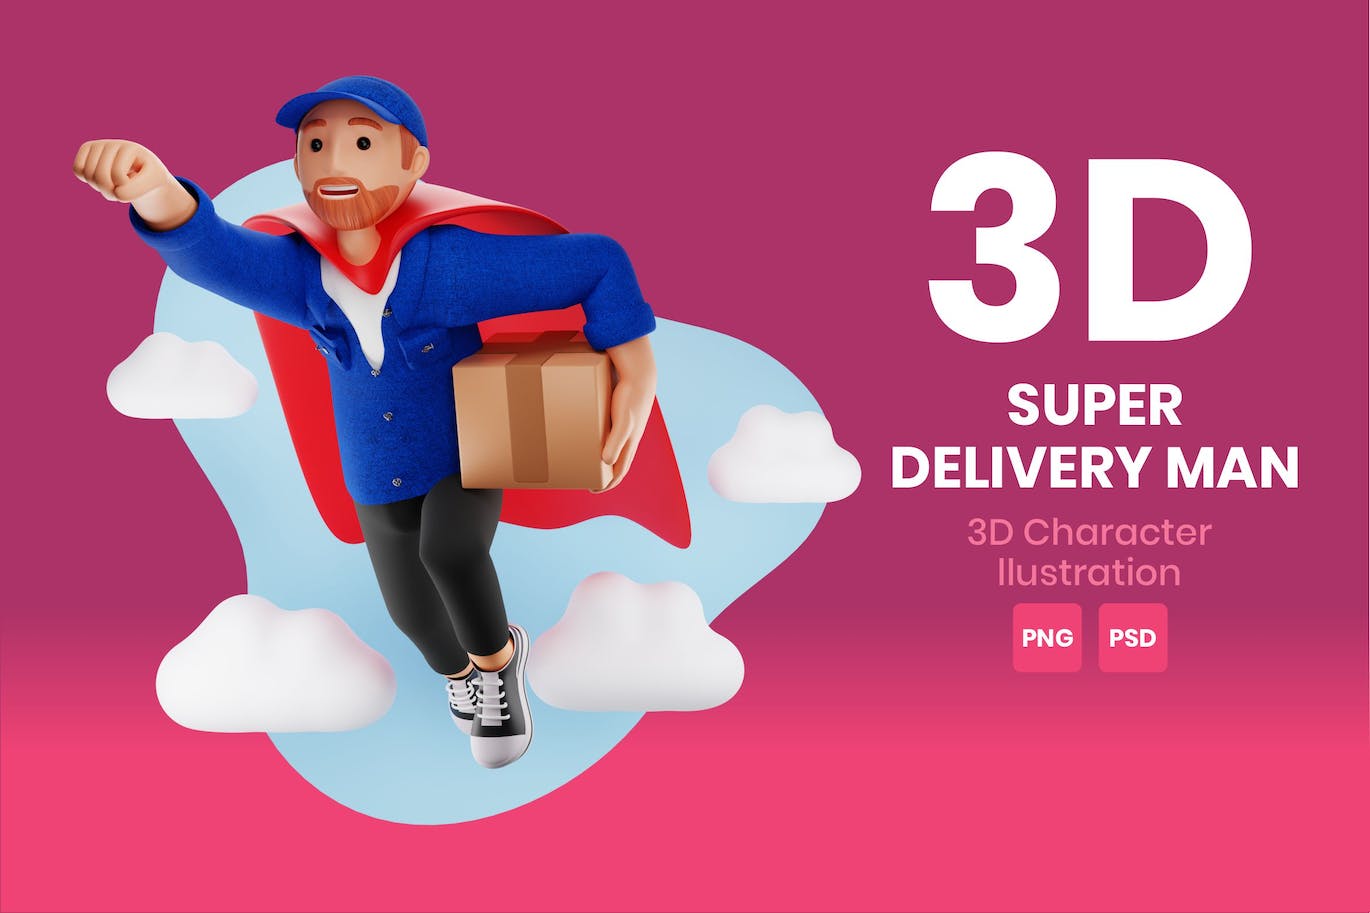 超级送货员3D角色插画素材 Super Delivery Man 3D Character Illustration 图片素材 第1张